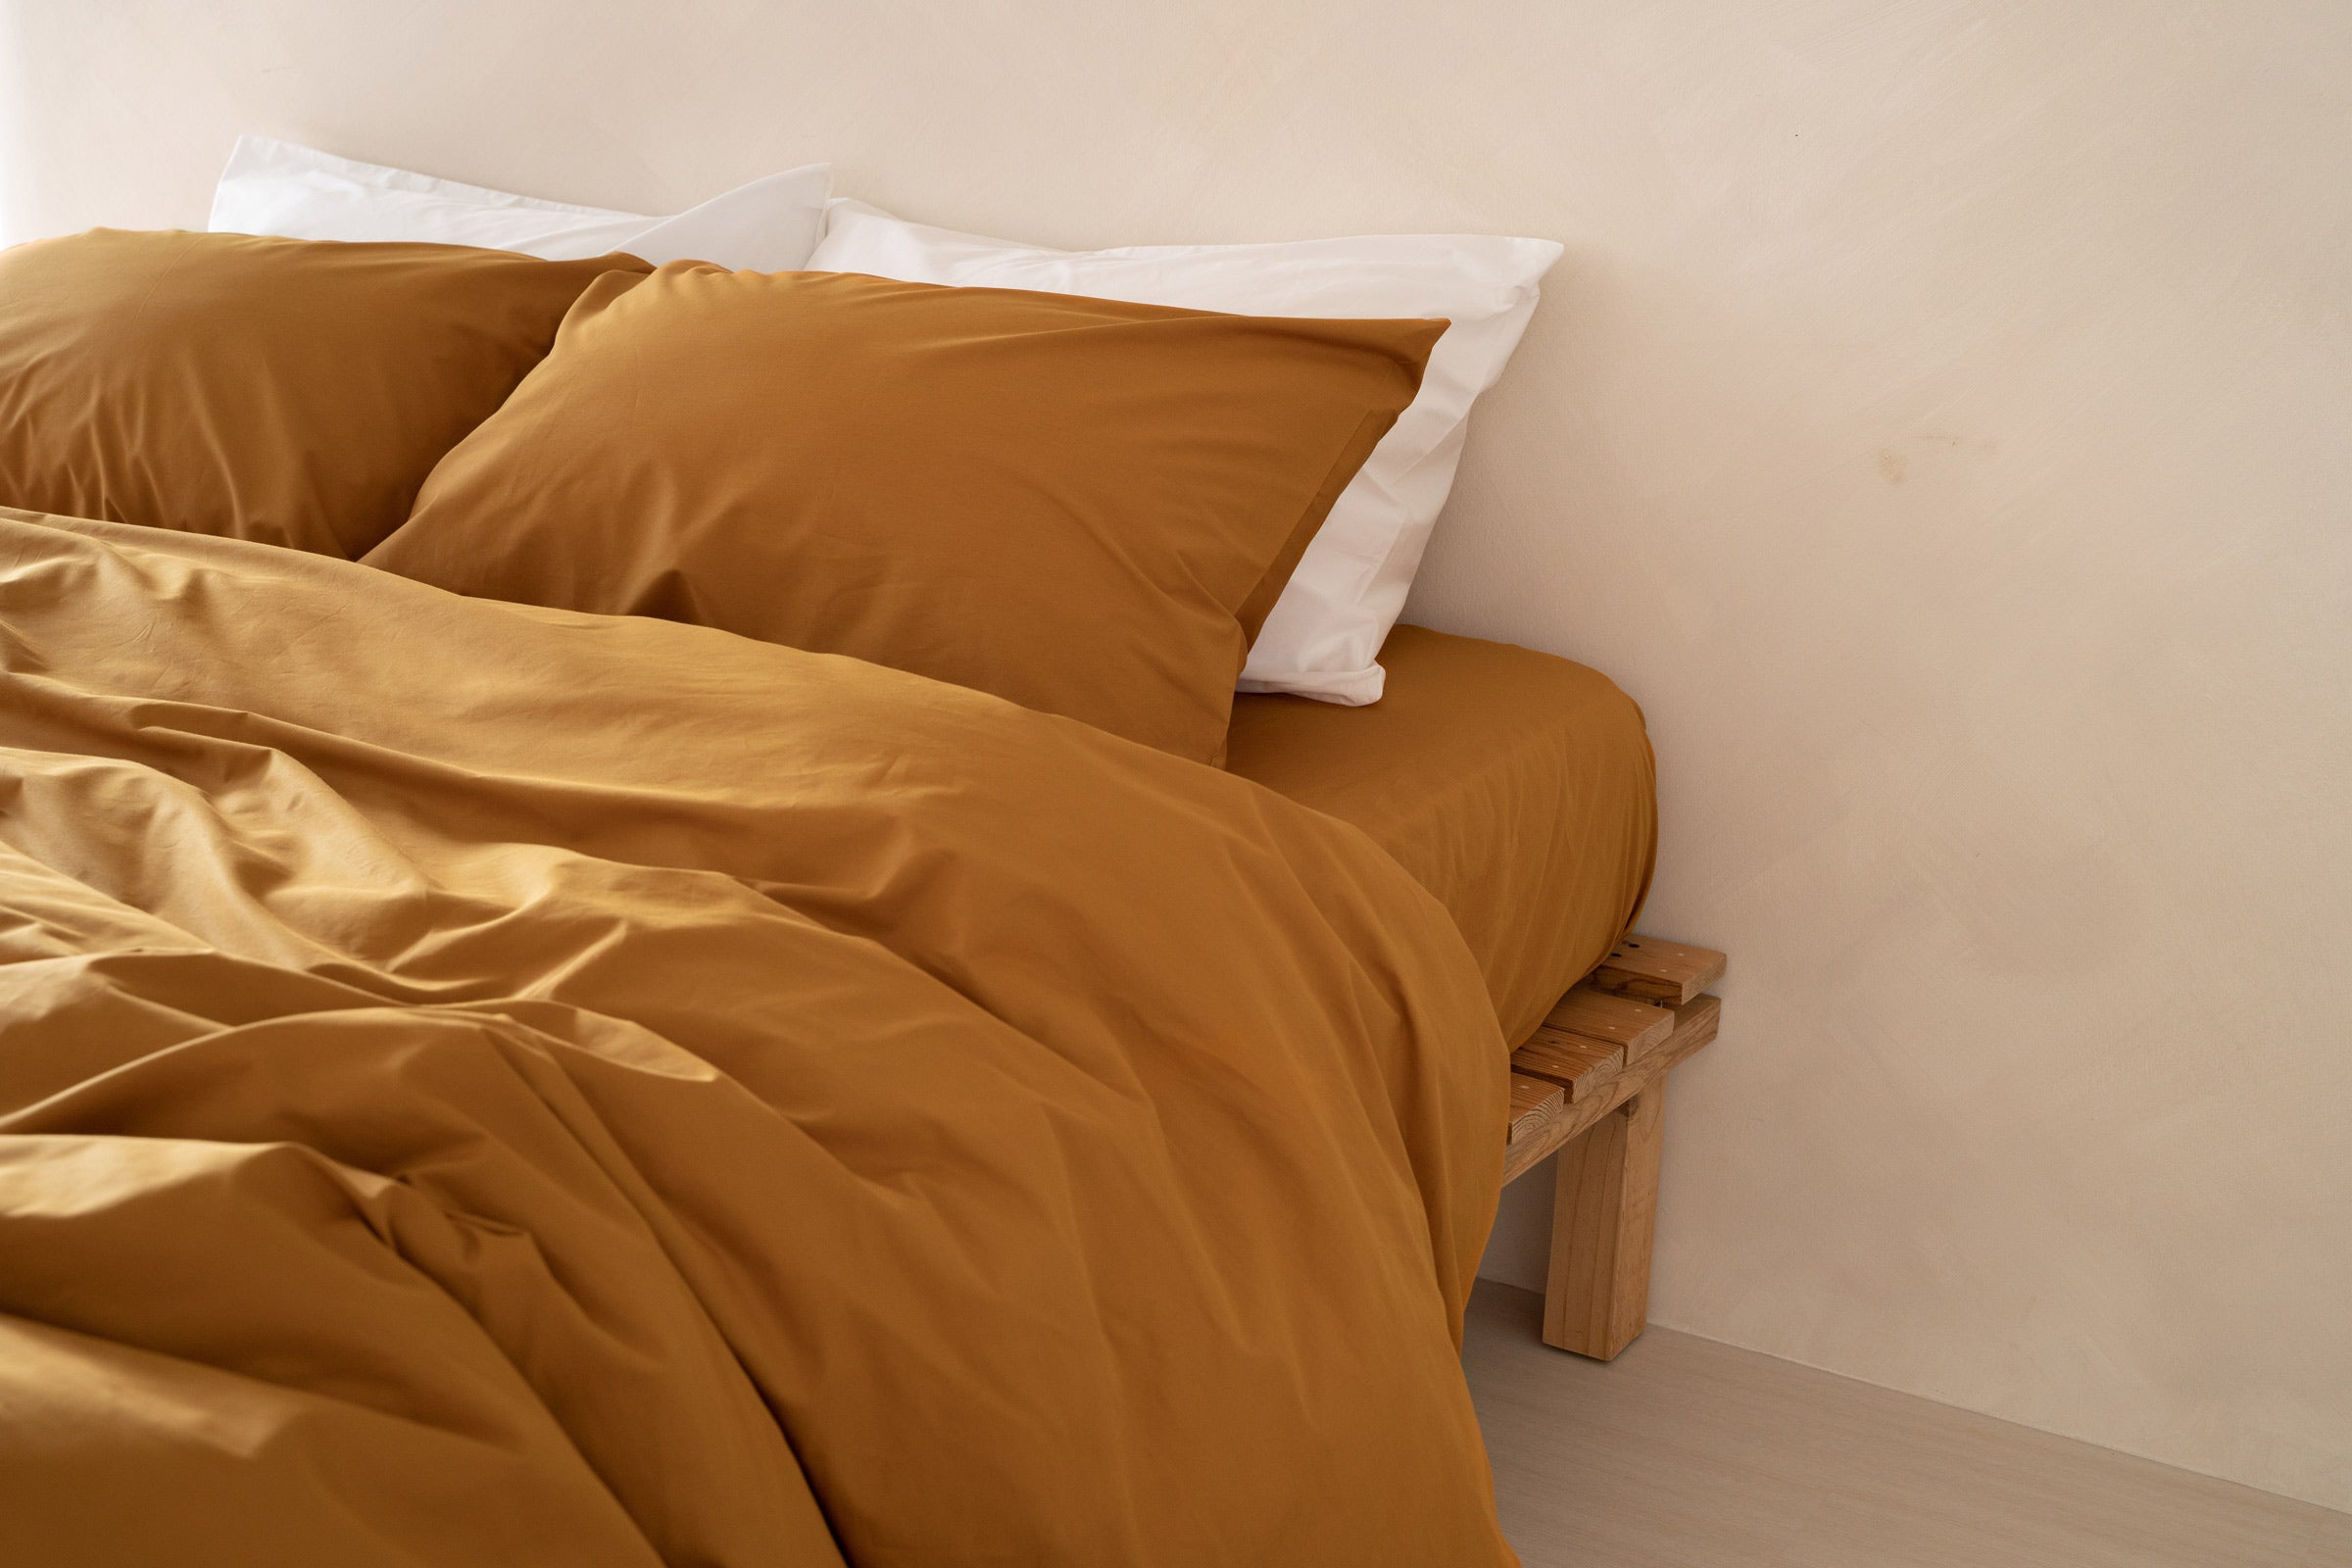 crisp-mustard-fitted-sheet-duvet-cover-pillowcase-pair-white-pillowcase-pair-by-sojao.jpg